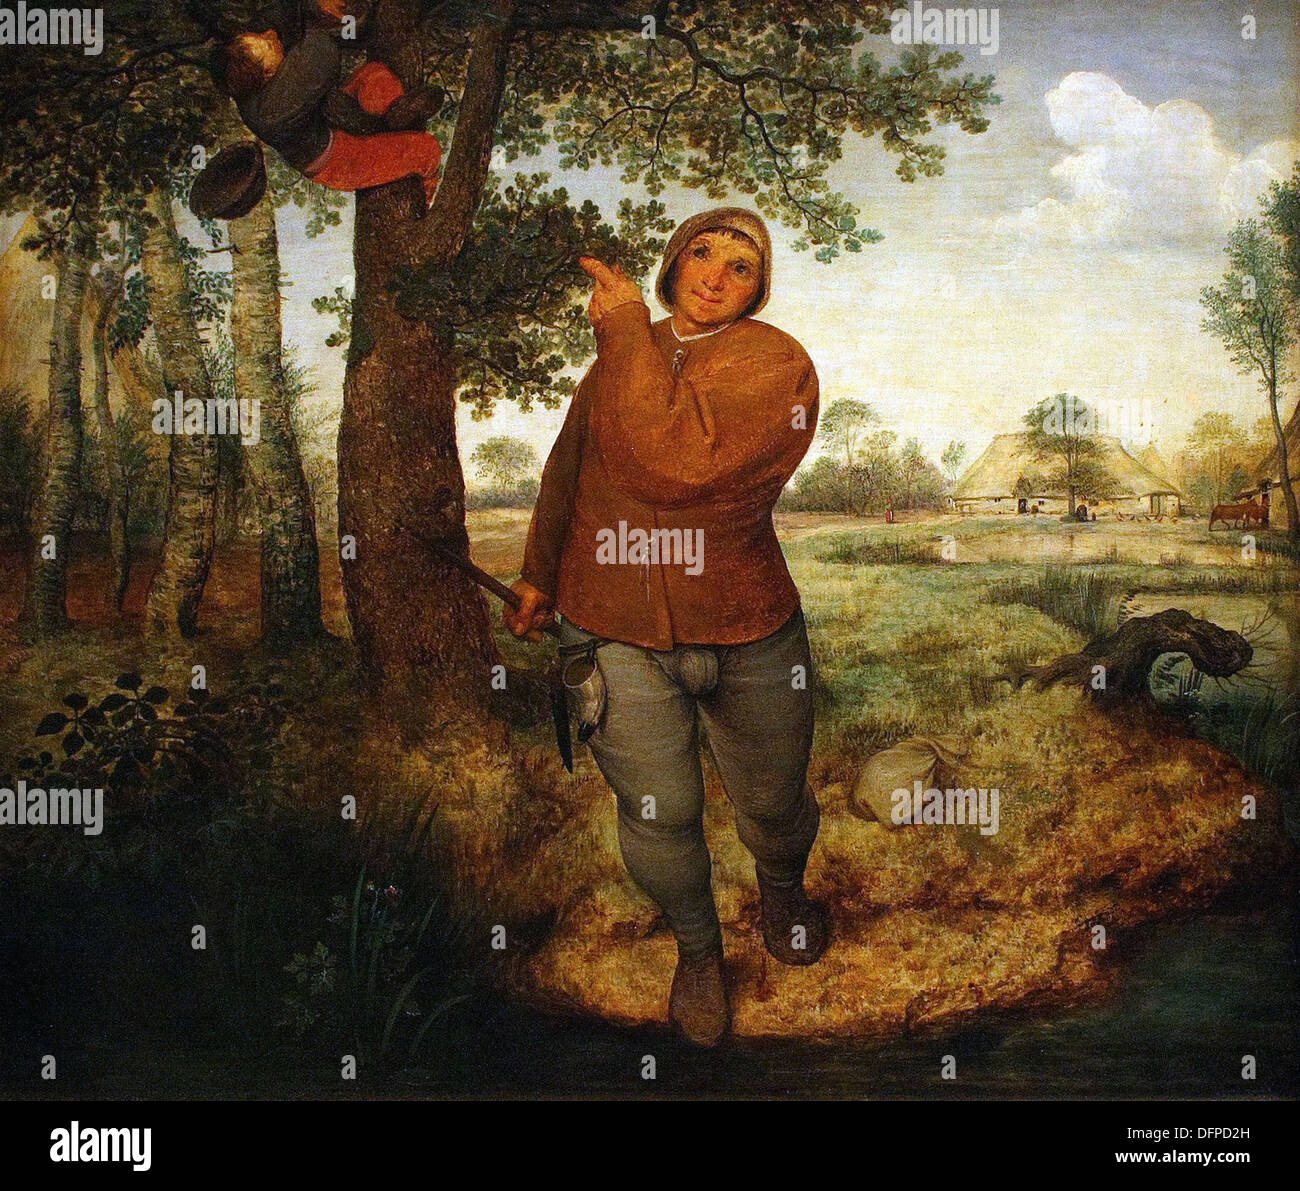 Pieter Bruegel el Viejo - El campesino y el Birdnester - 1568 - Museo Kunsthistoriches - Viena Foto de stock